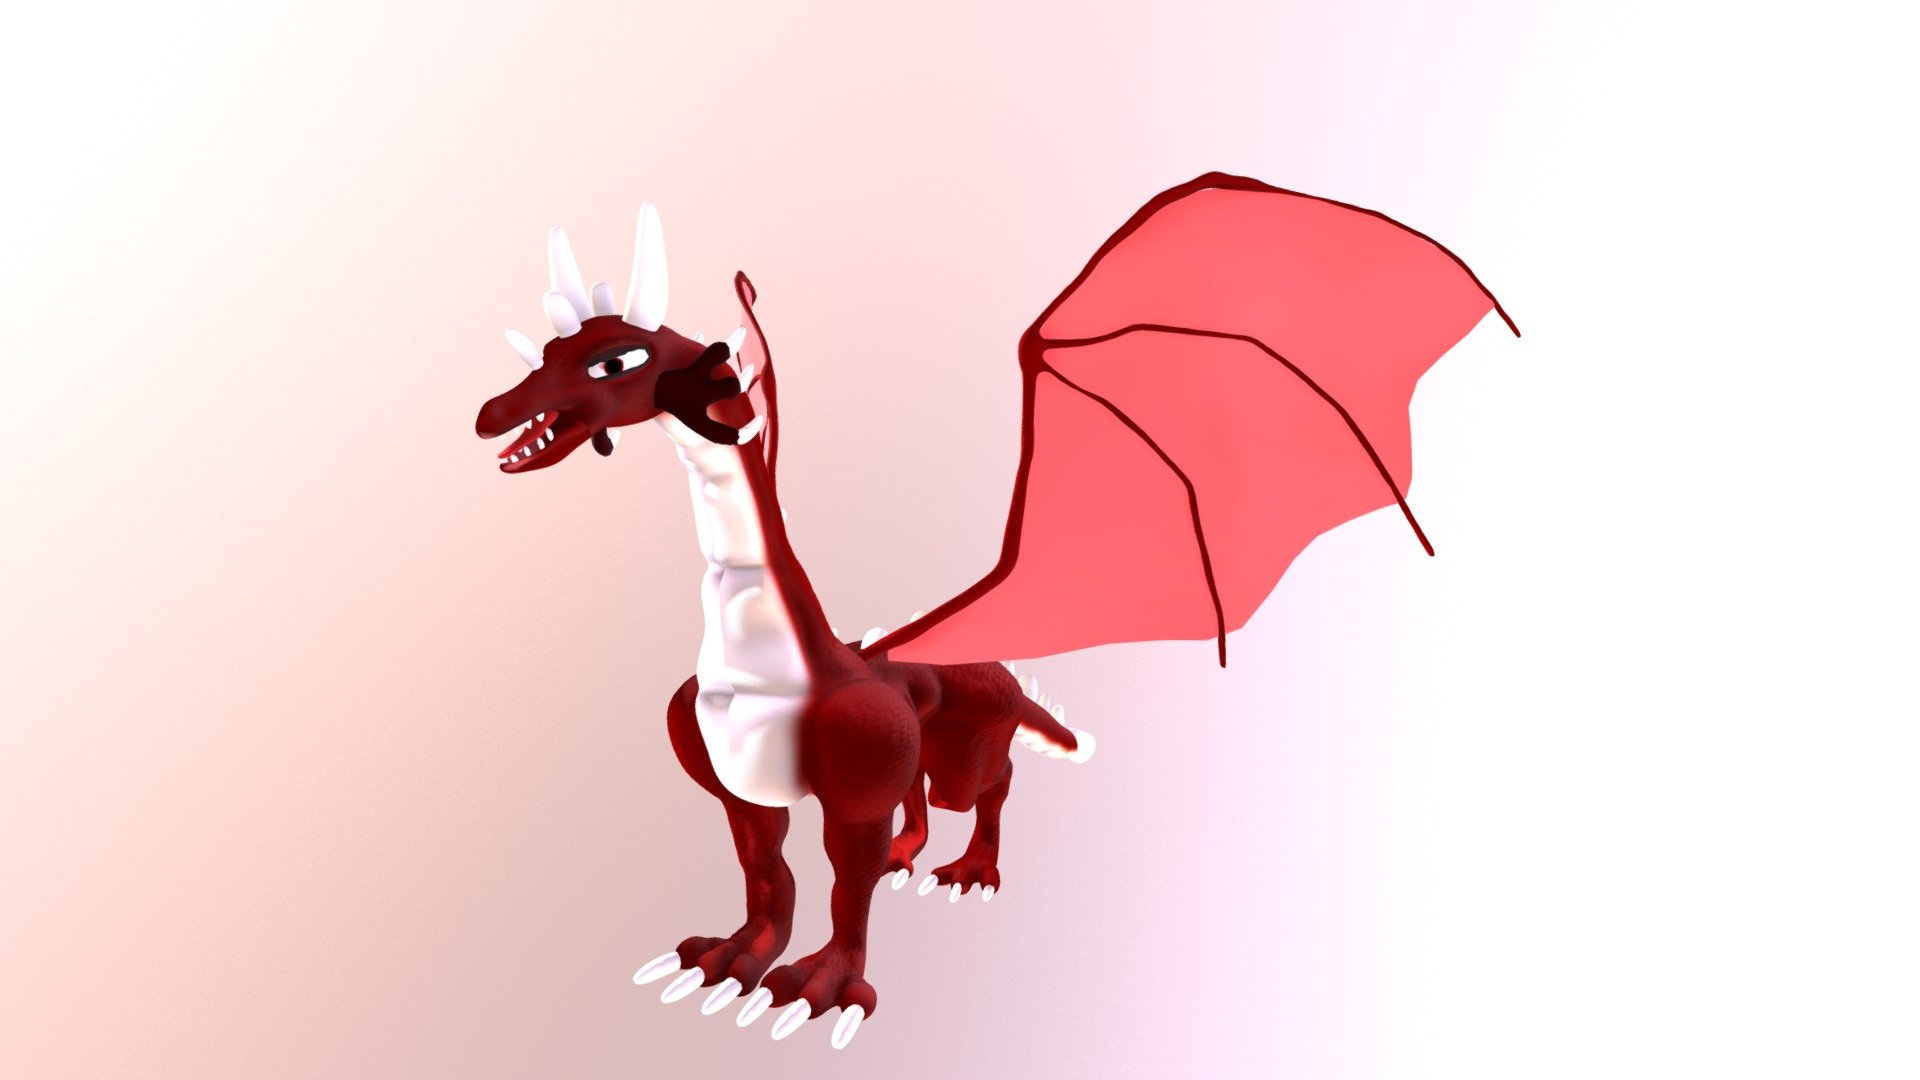 Dragon Red Fantasy Creature Cartoon 3D model - Dragon Character Creature - 3D model by xeratdragons (@dragonights91) 3d model